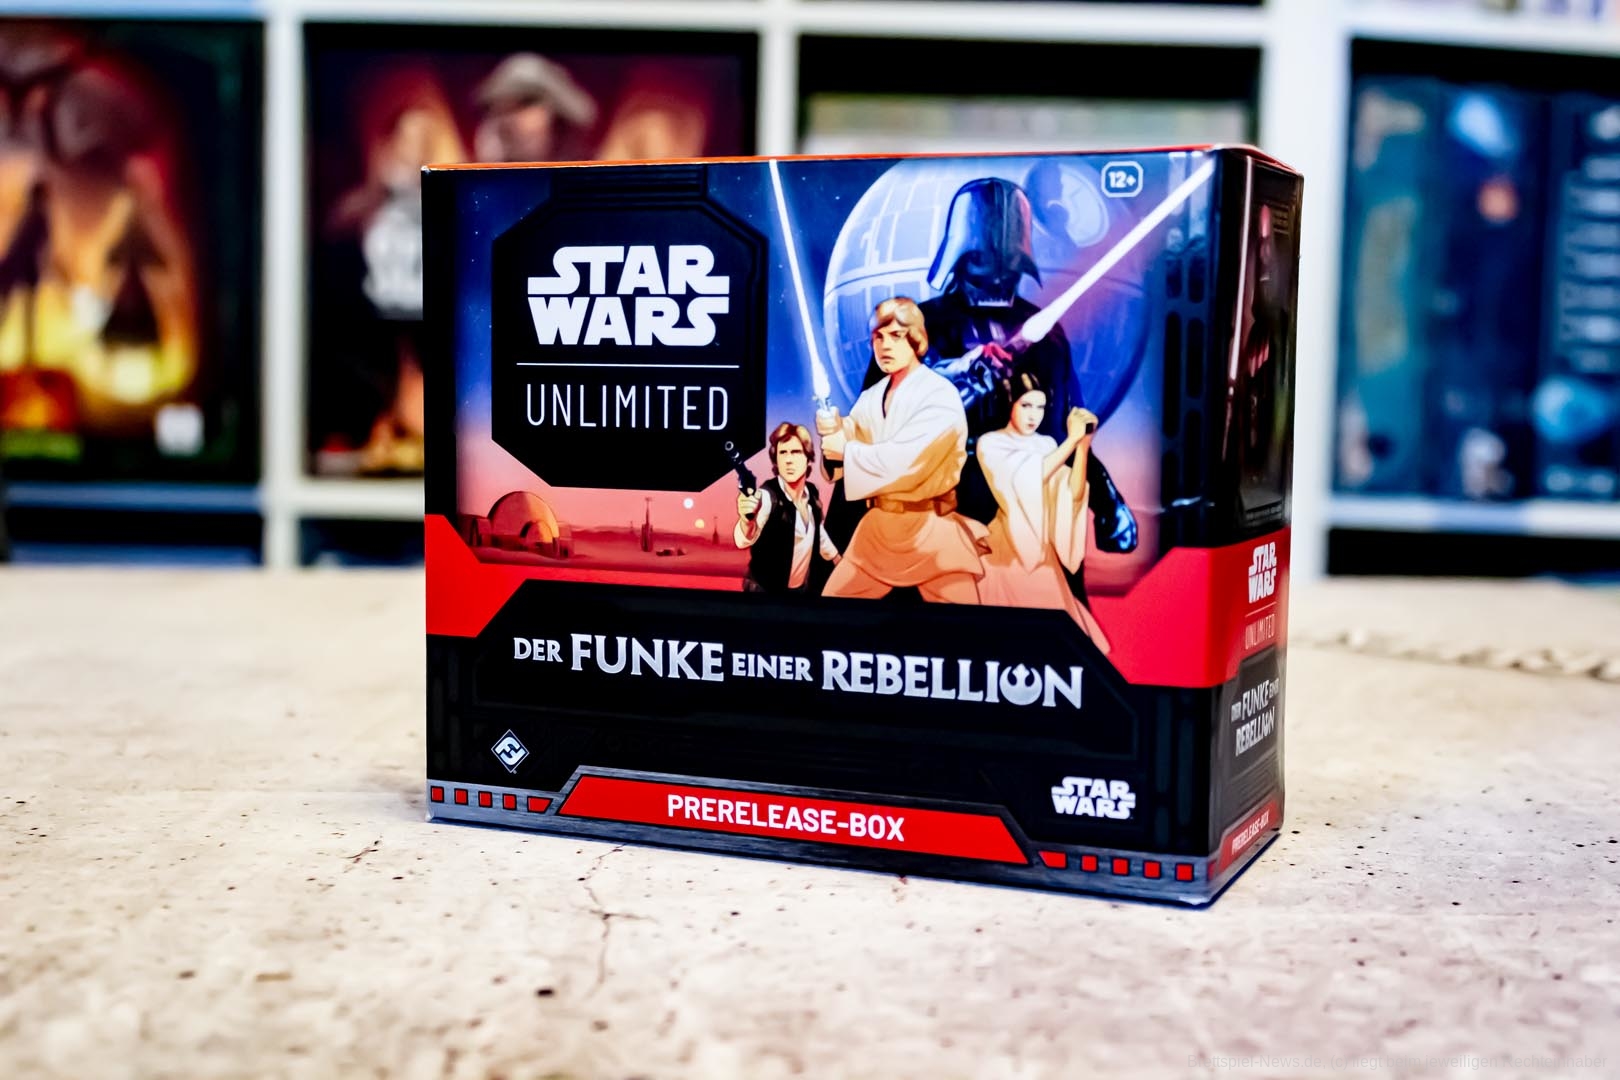 Star Wars: Unlimited – Das ist die Prerelease-Box